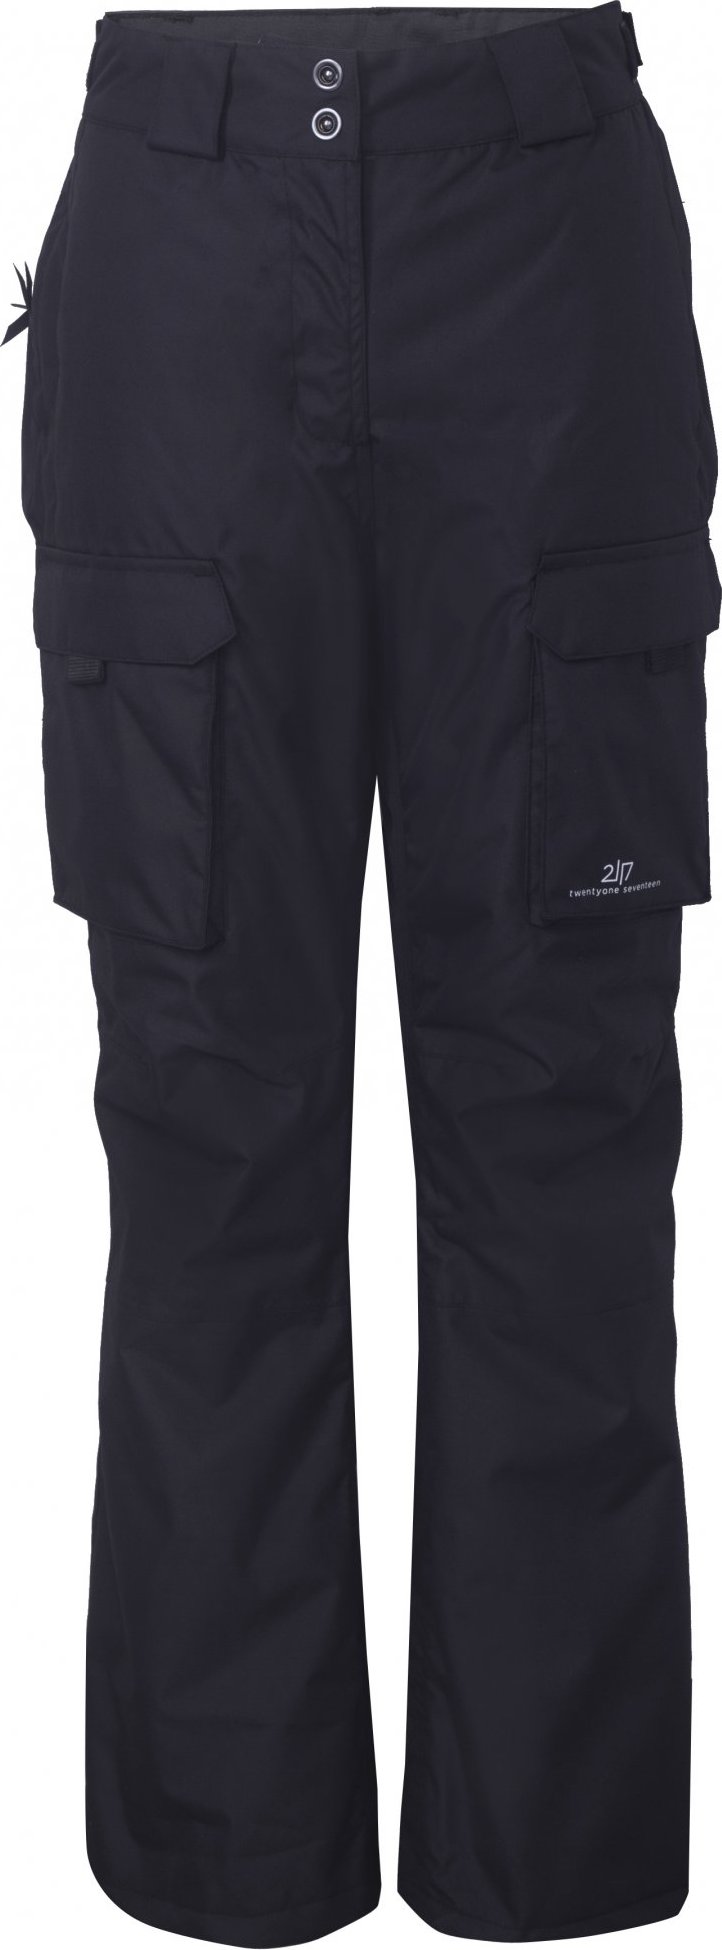 Dámské lyžařské kalhoty 2117 Tybble Eco černá Velikost: M